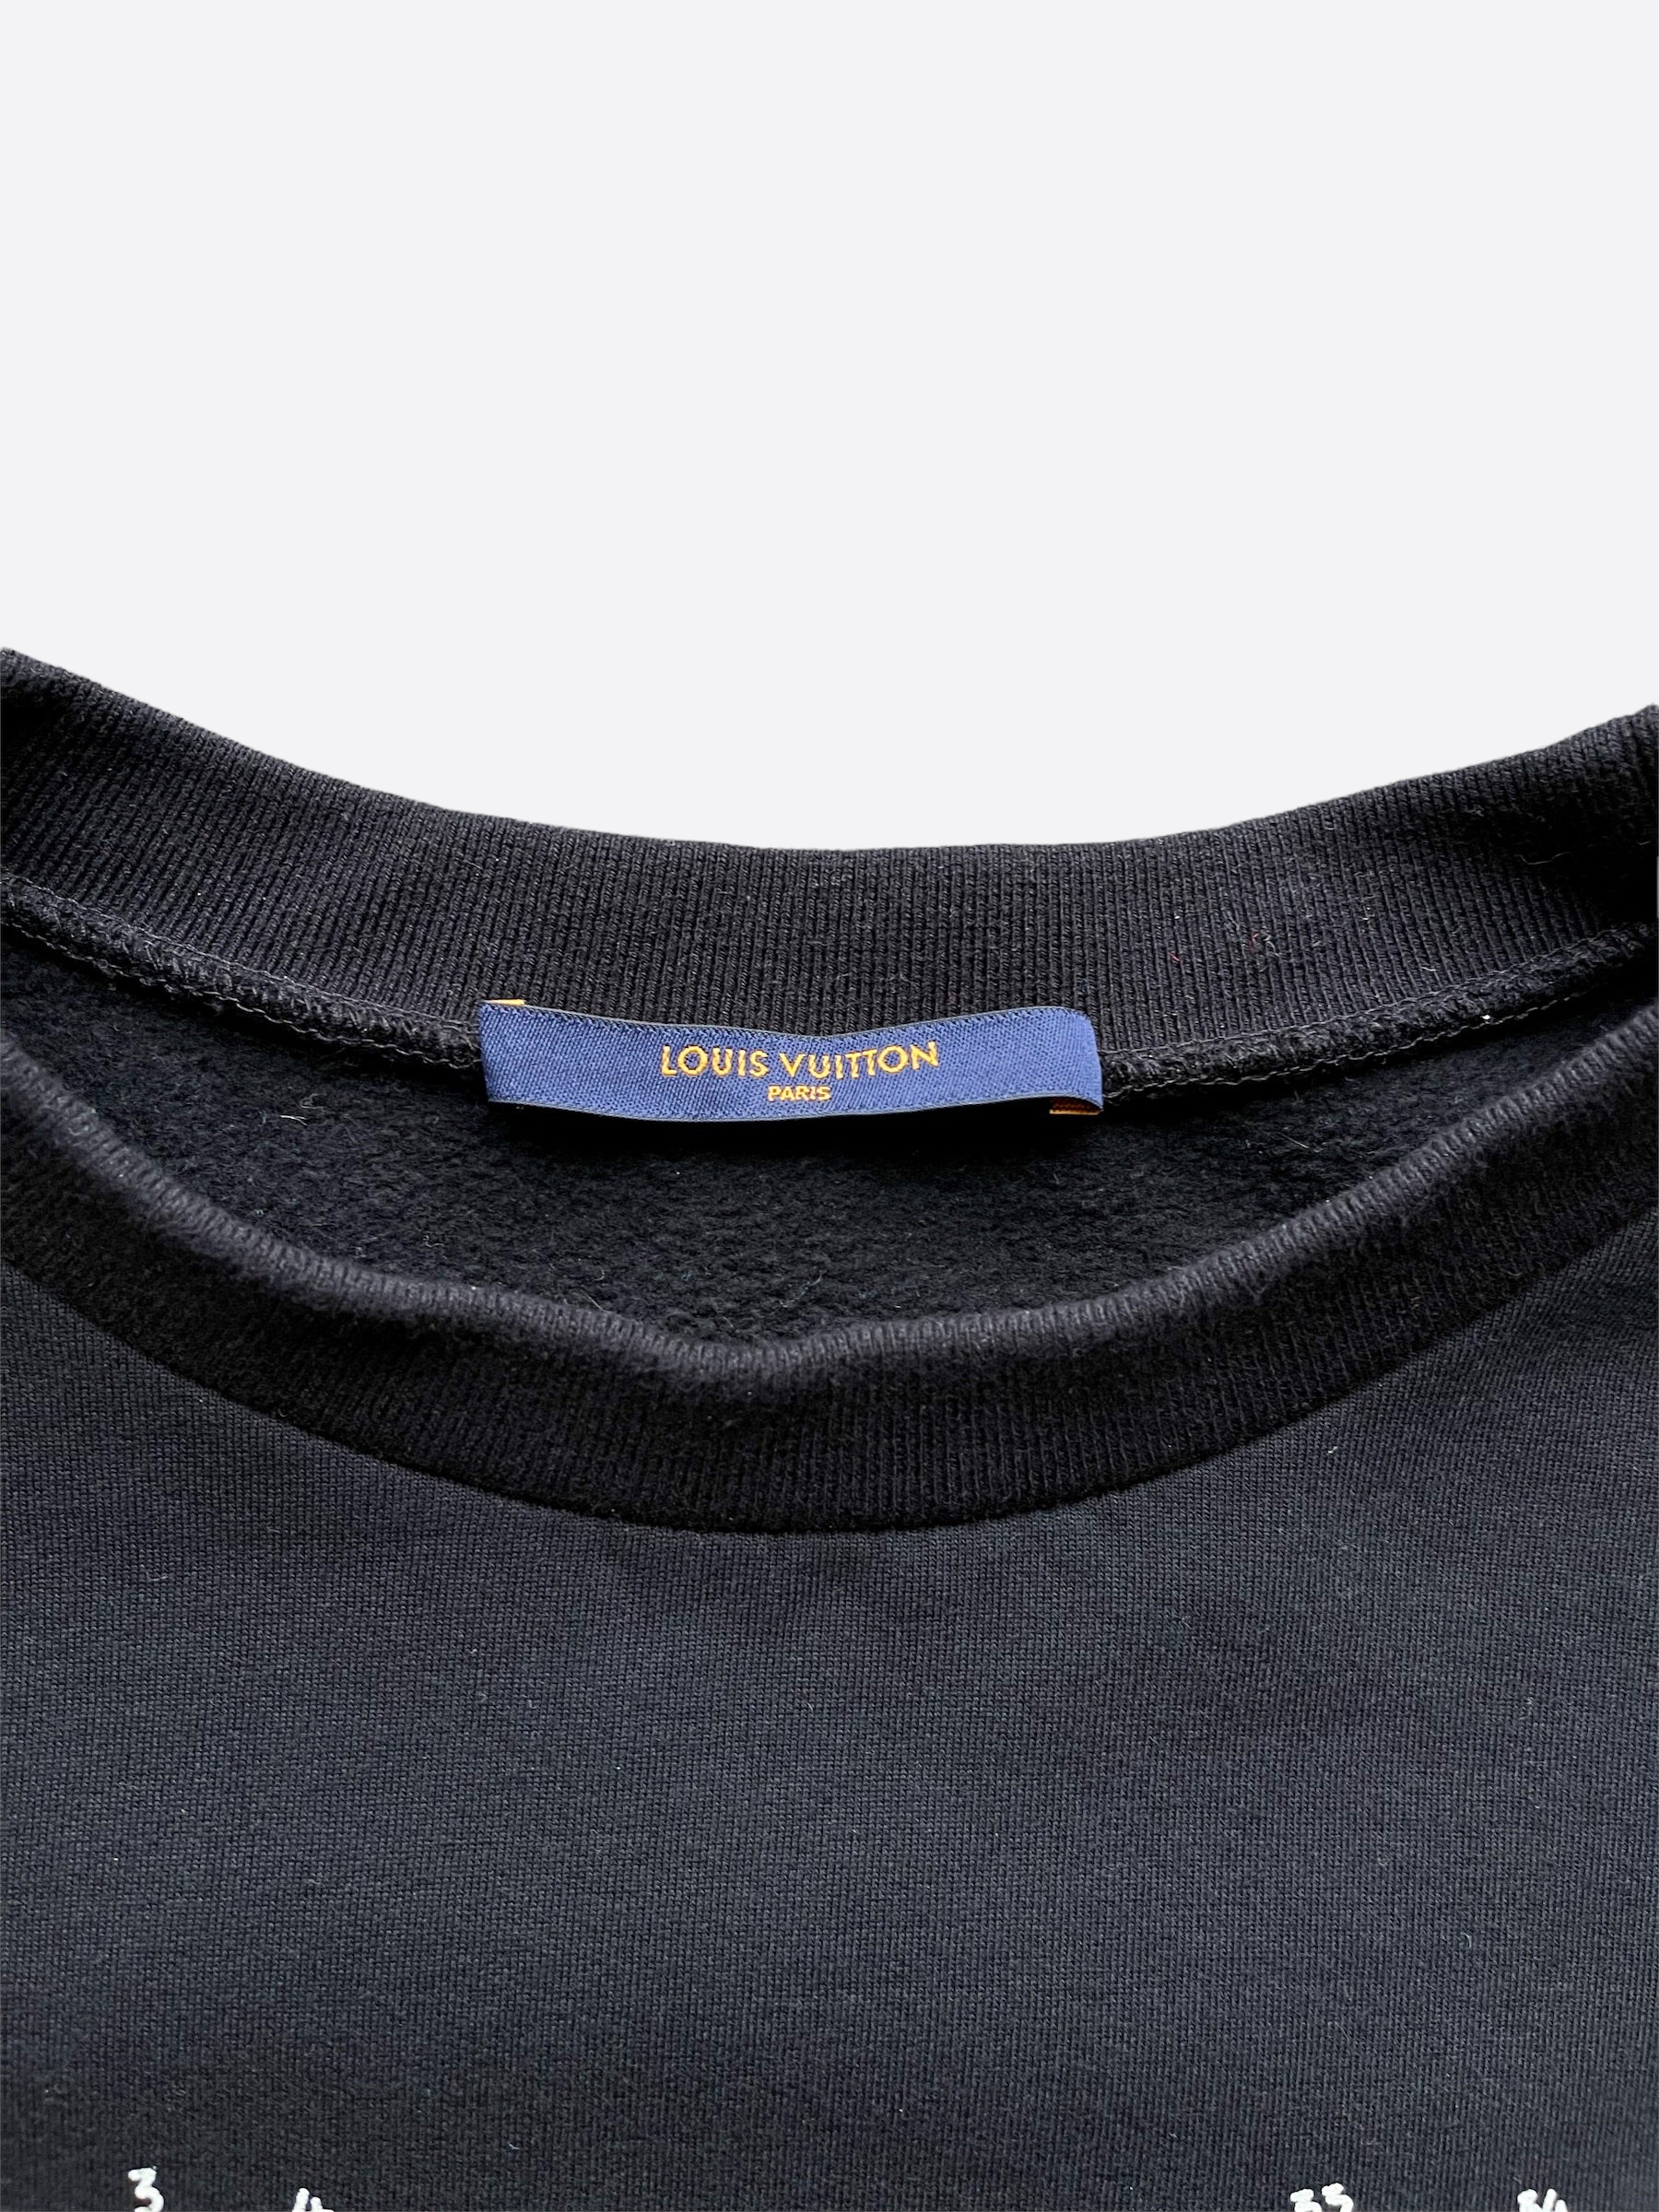 Who is Louis Vuitton? Crewneck Sweatshirt Adult– Meh. Geek